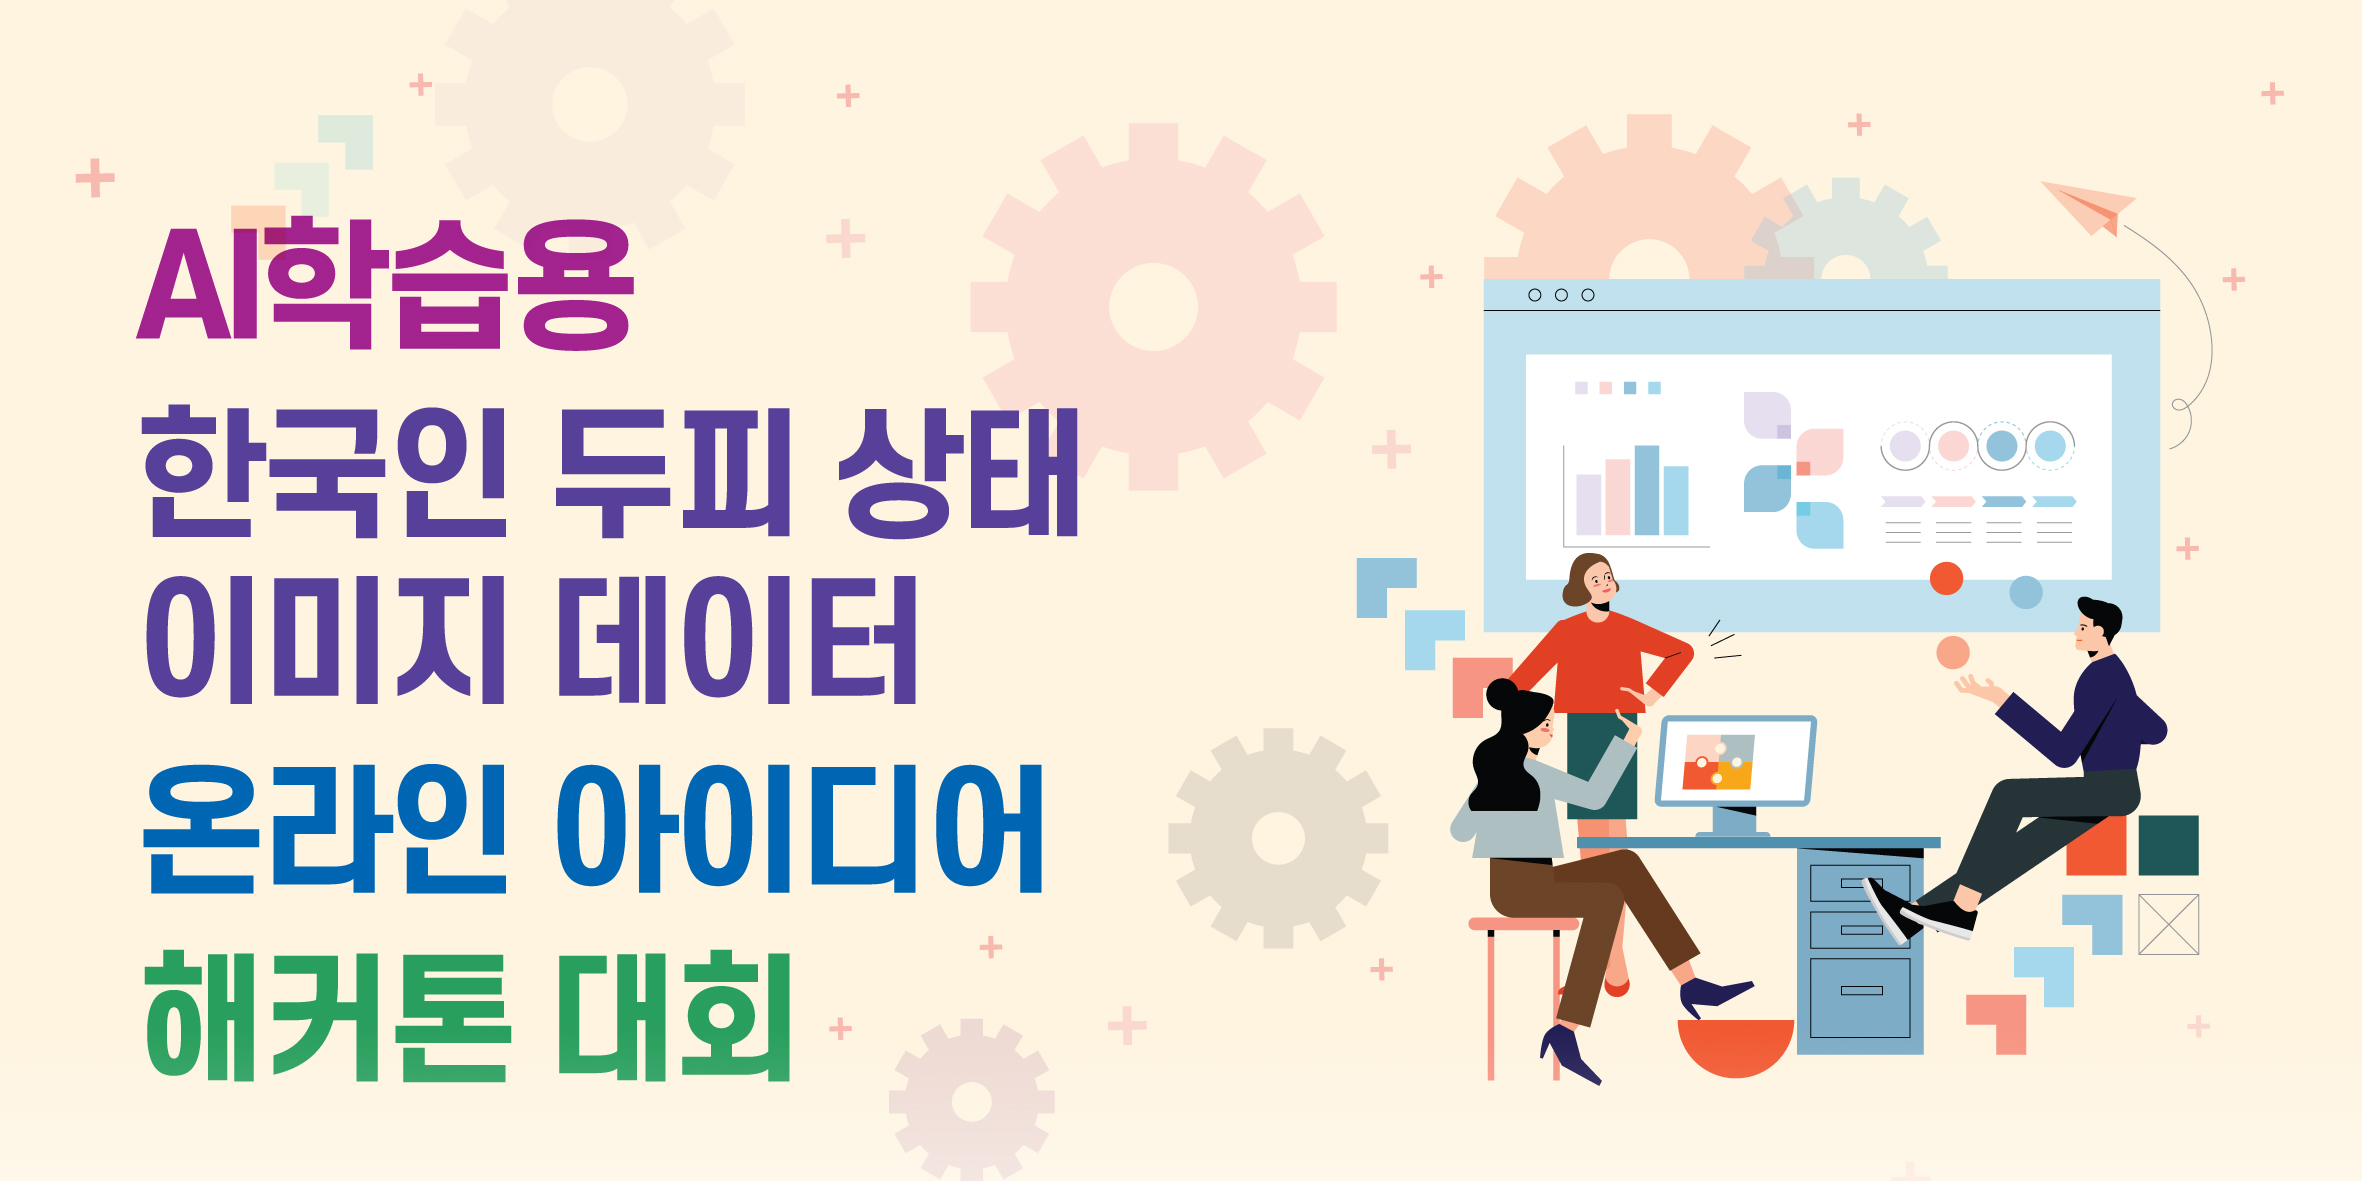 AI학습용 한국인 두피상태 이미지 데이터 온라인 아이디어 해커톤 대회